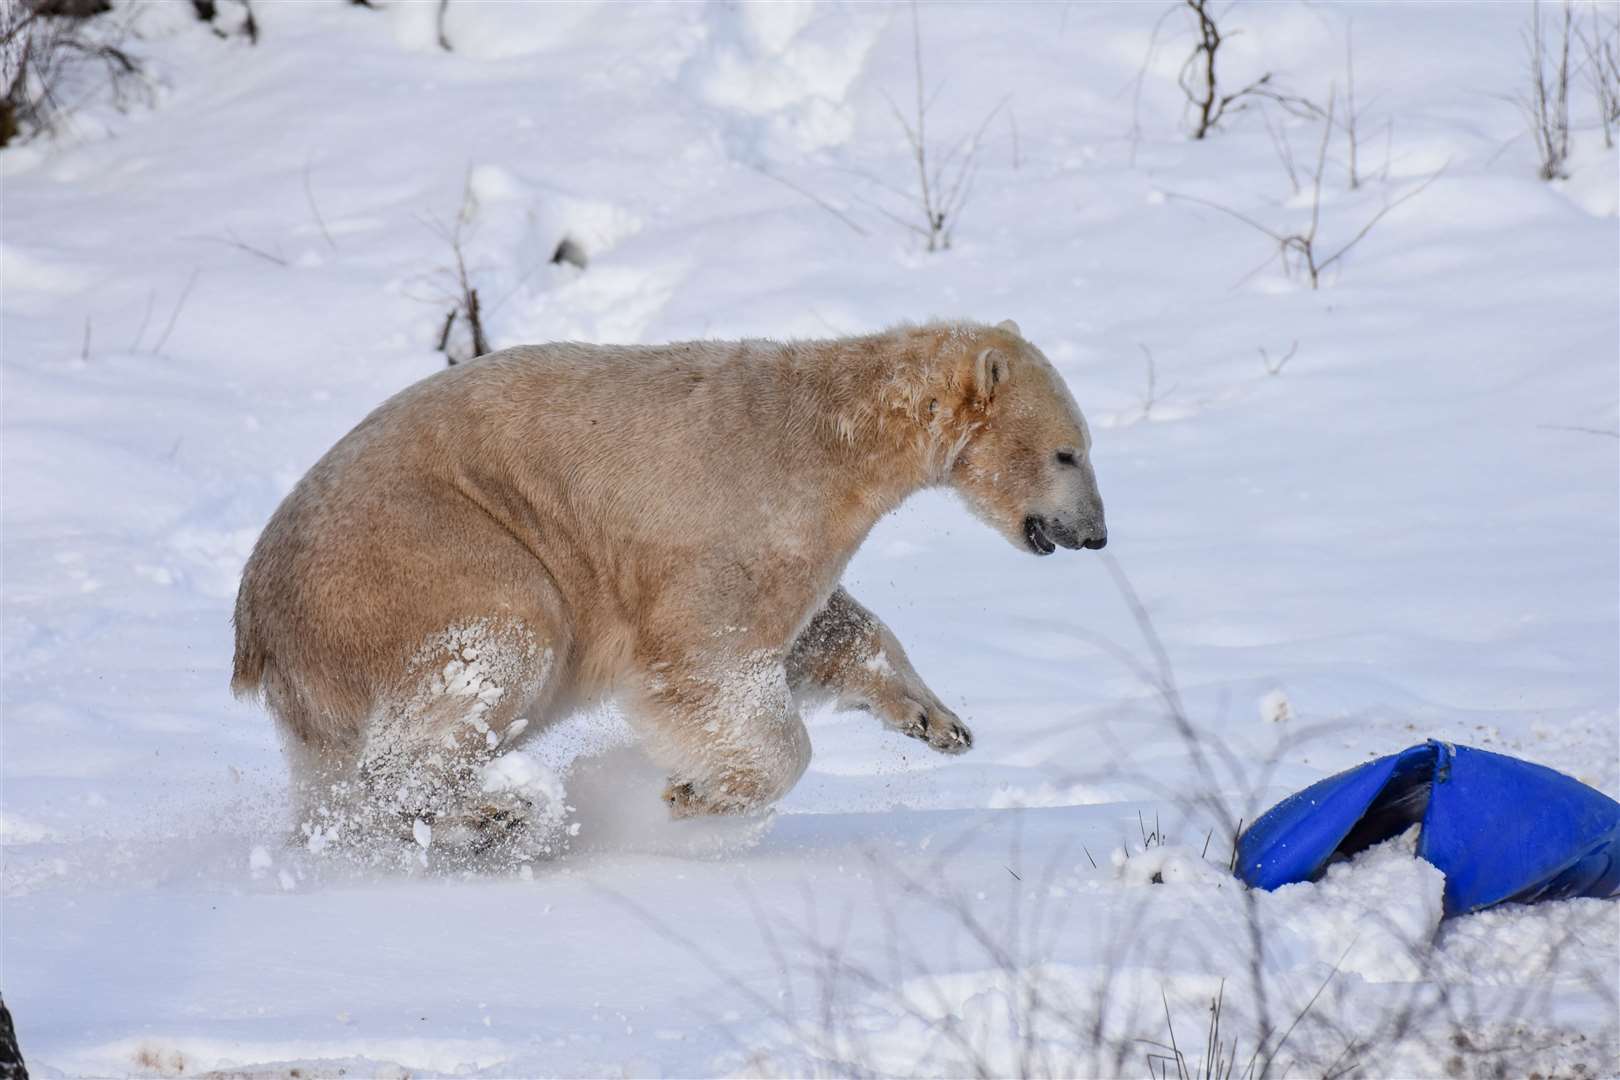 Hamish takes to the snow. Pic: RZSS/Alyson Houston